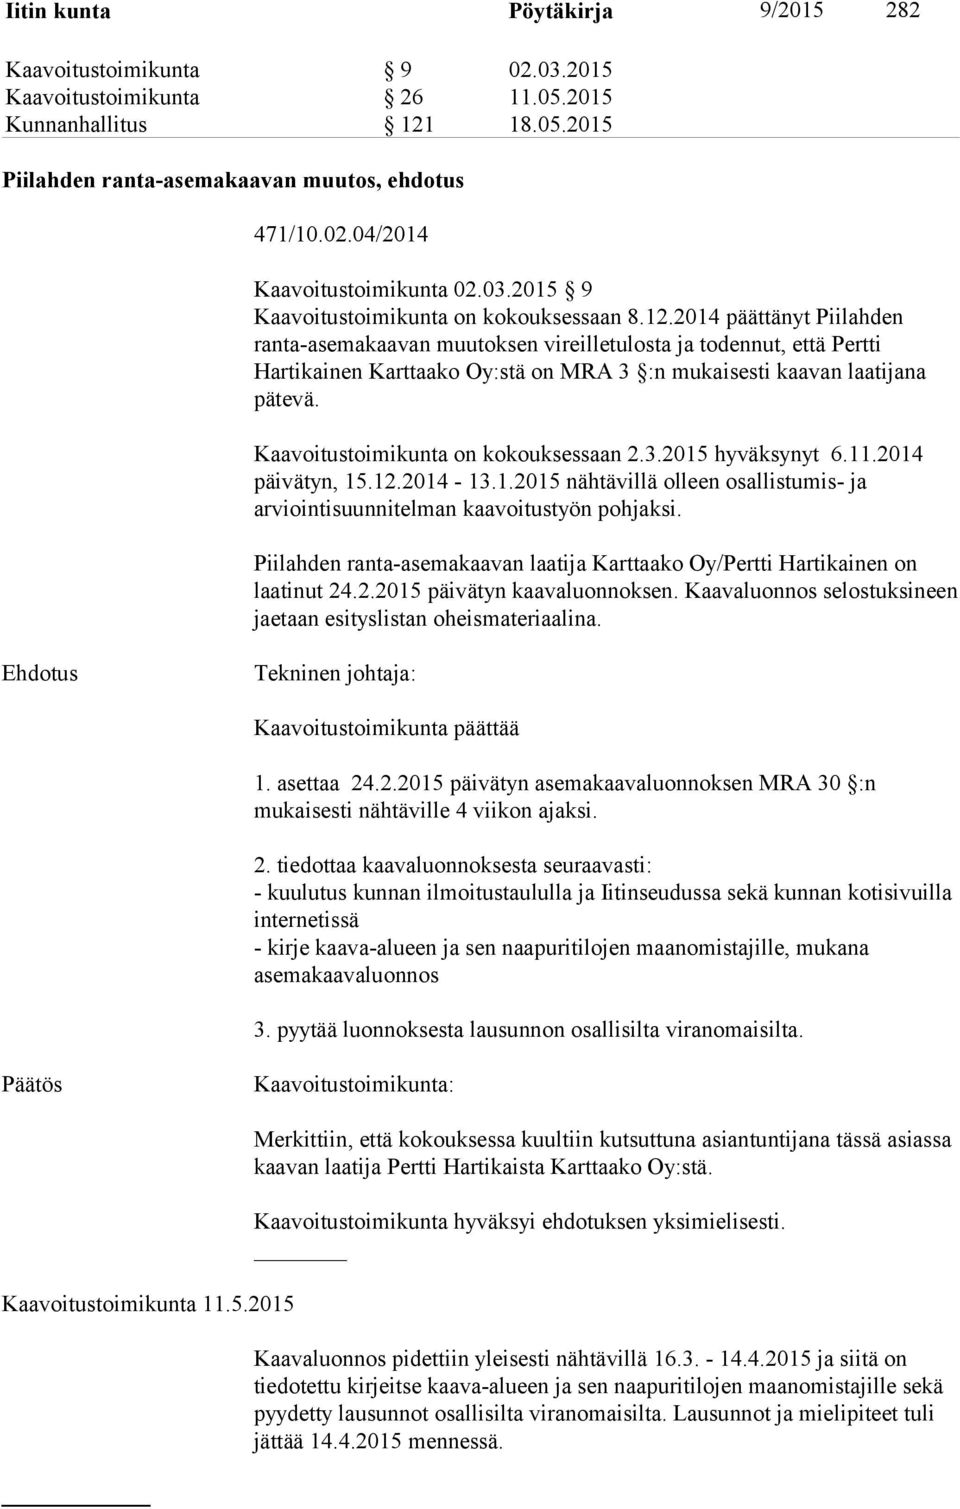 2014 päättänyt Piilahden ranta-asemakaavan muutoksen vireilletulosta ja todennut, että Pertti Hartikainen Karttaako Oy:stä on MRA 3 :n mukaisesti kaavan laatijana pätevä.